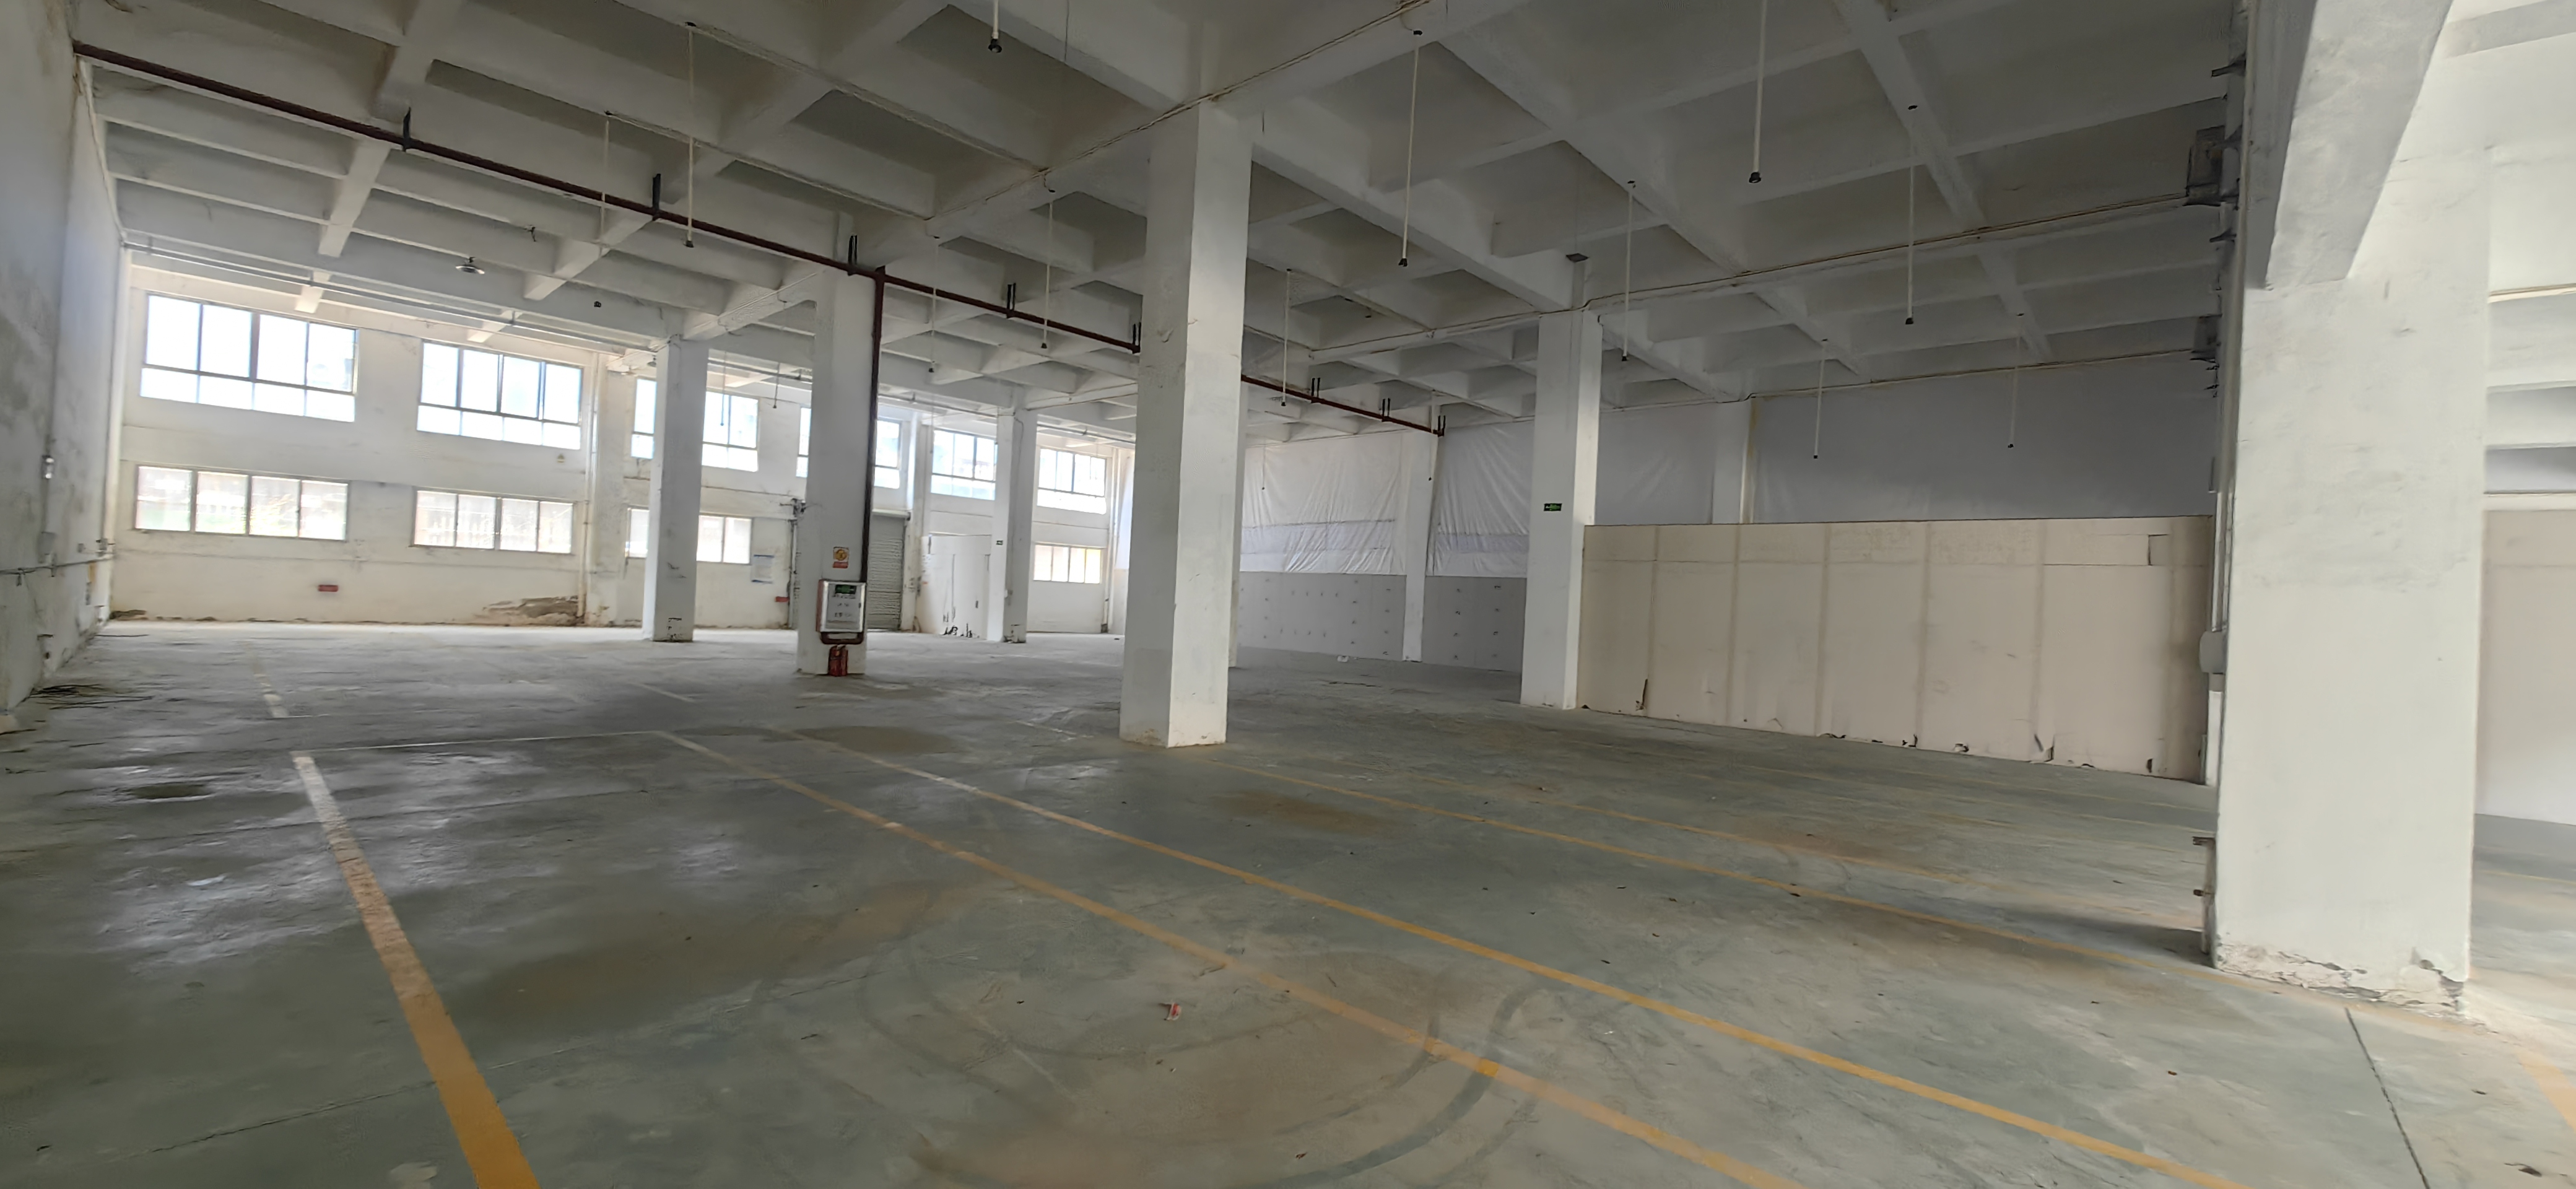 新塘镇夏埔工业区重工业厂房一楼仓库出租1200平米